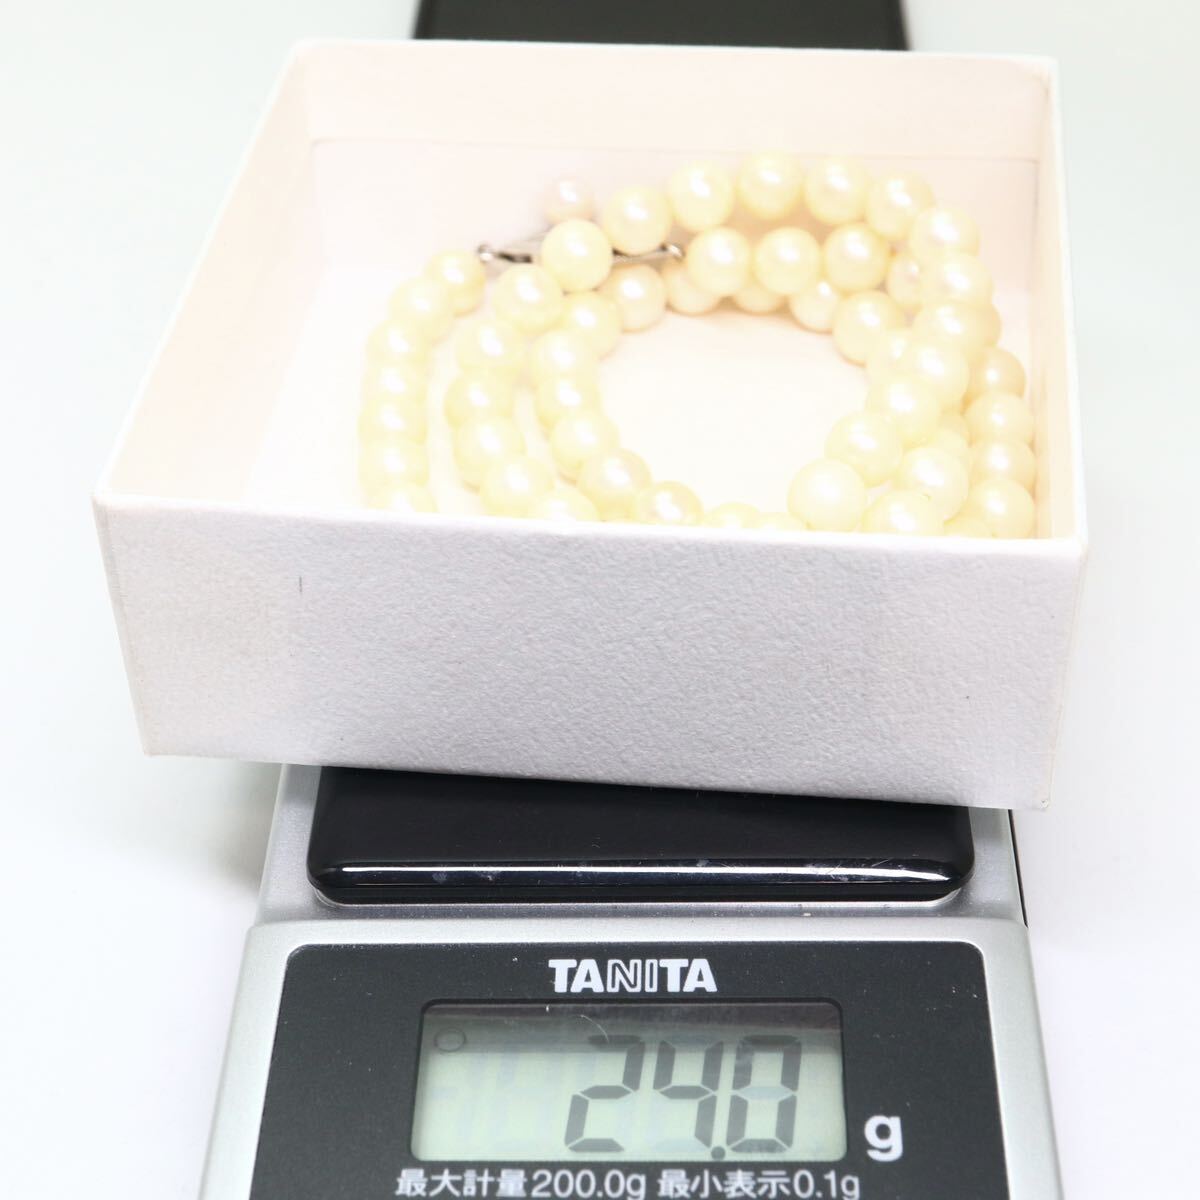 《アコヤ本真珠ネックレス》M 24.0g 約6.0-6.5mm珠 約43cm pearl necklace ジュエリー jewelry CE0/DA0の画像9